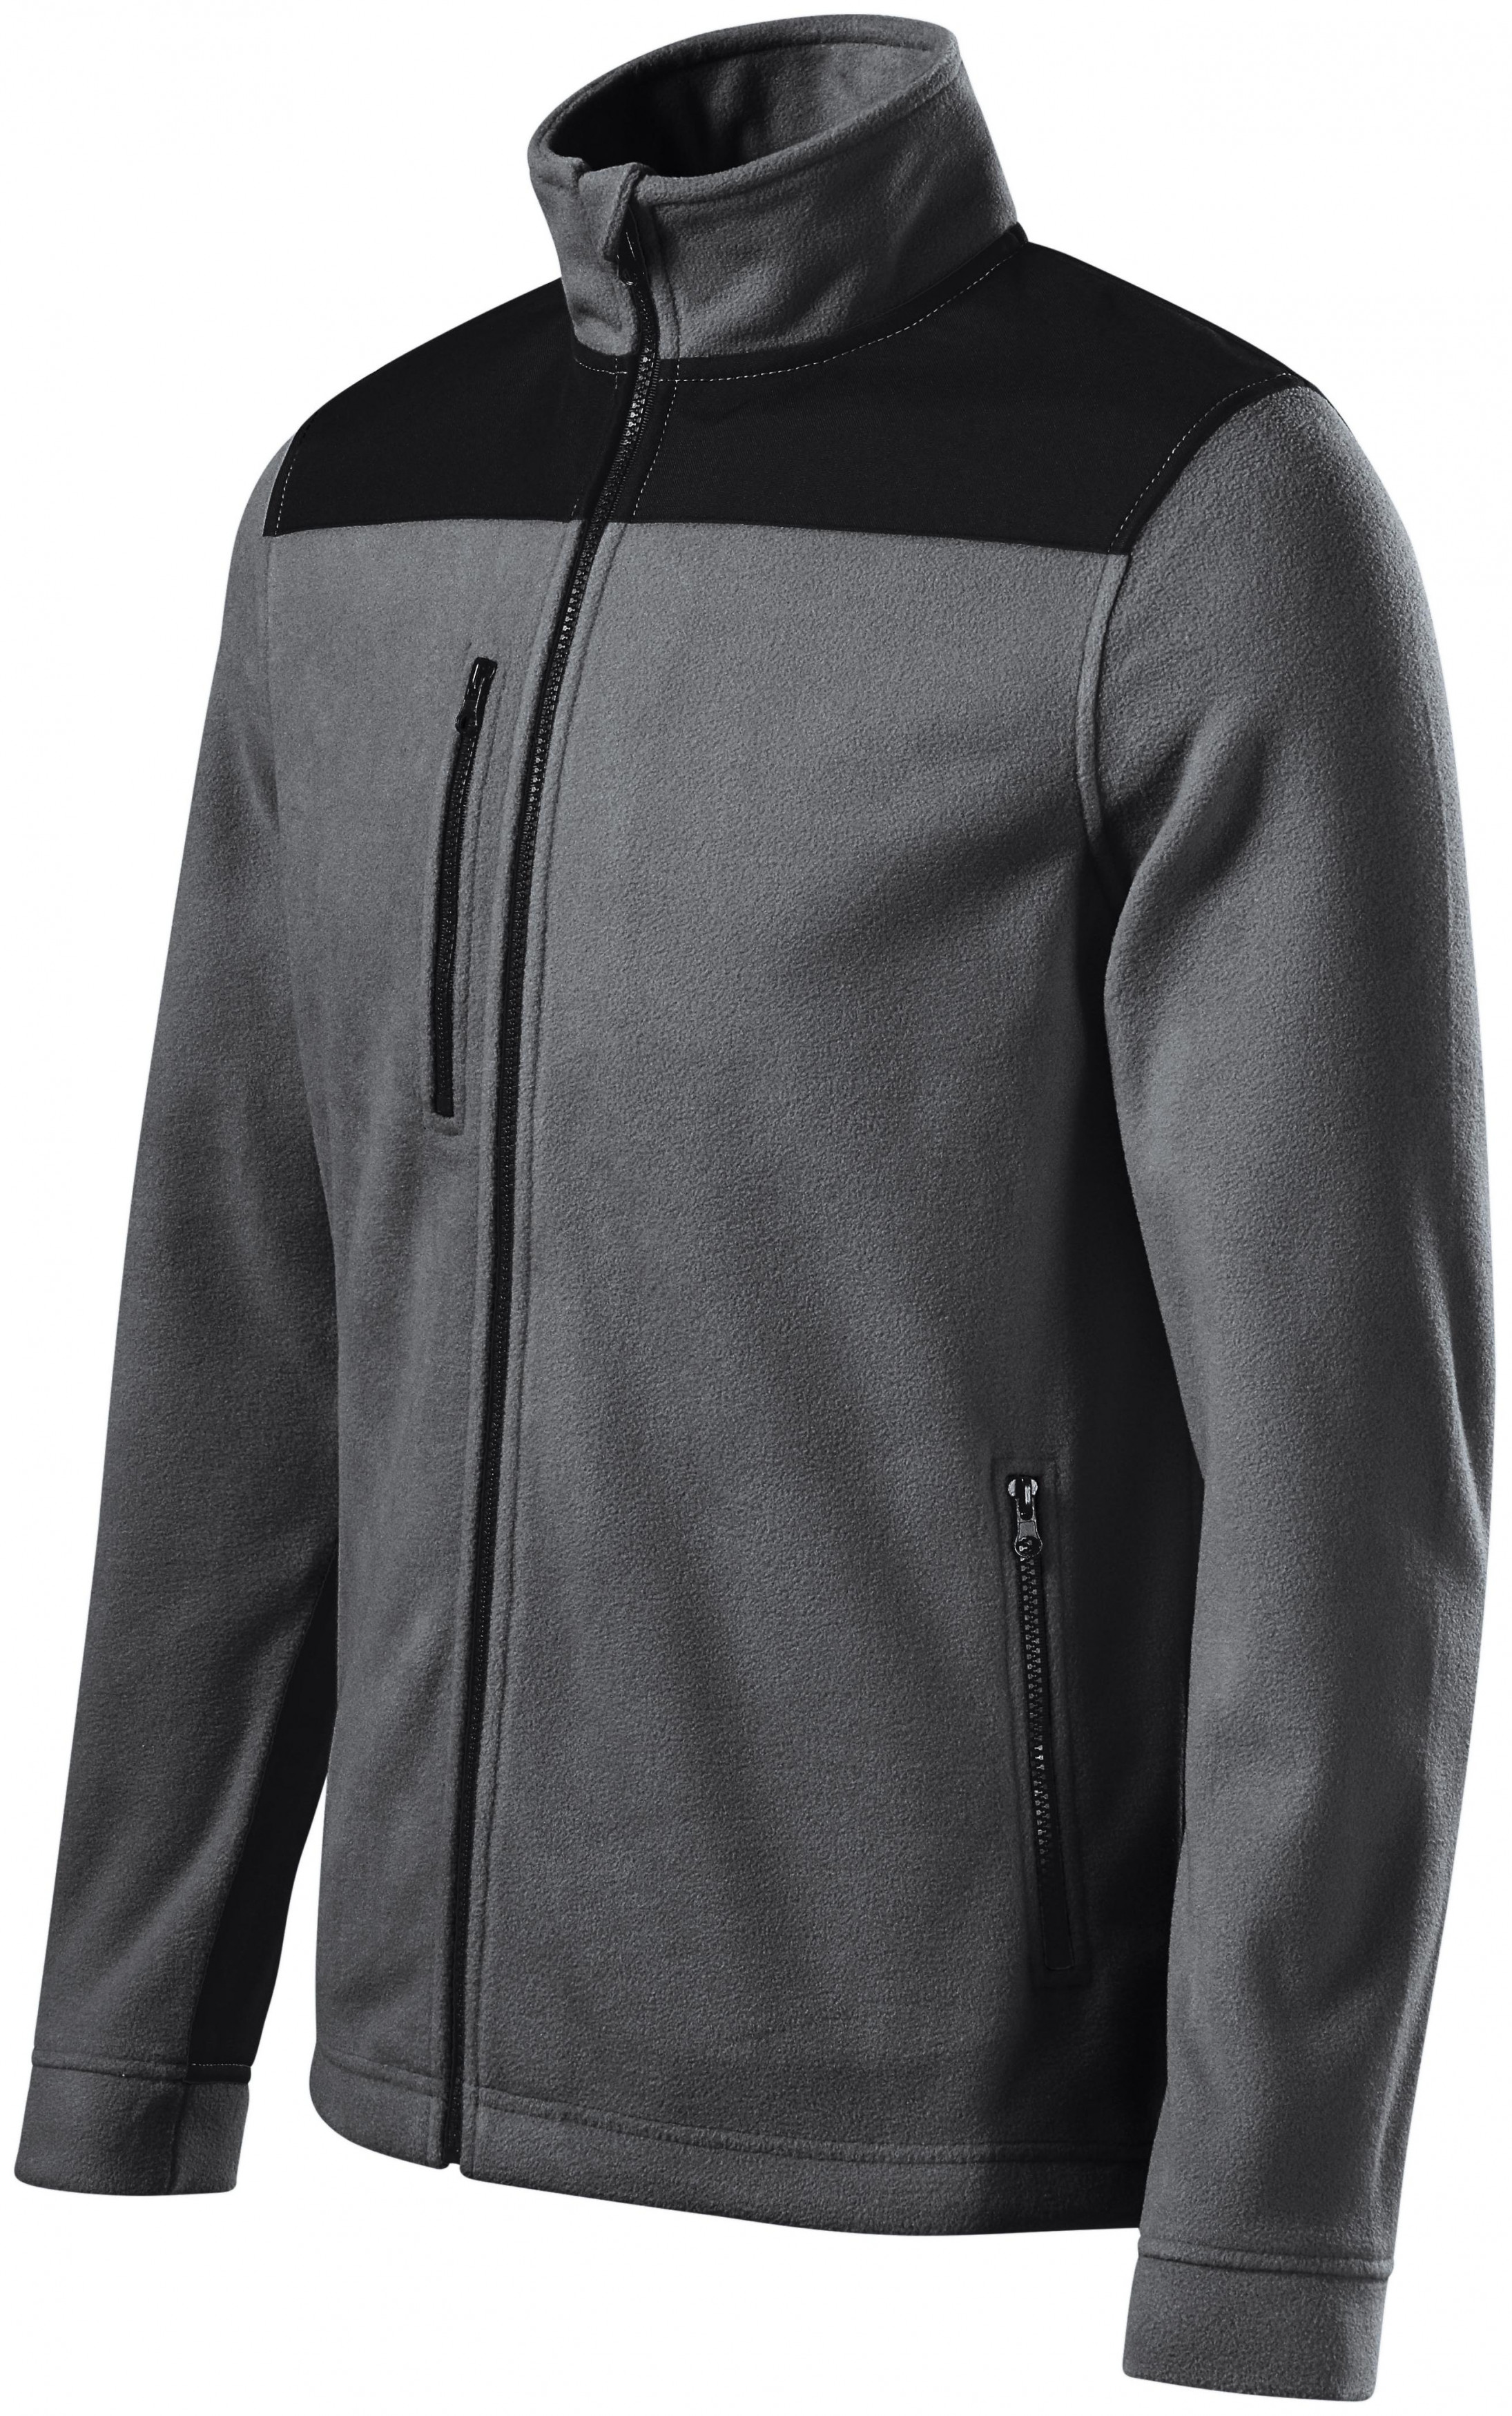 Hrejivá unisex fleecová bunda, oceľovo sivá, XL